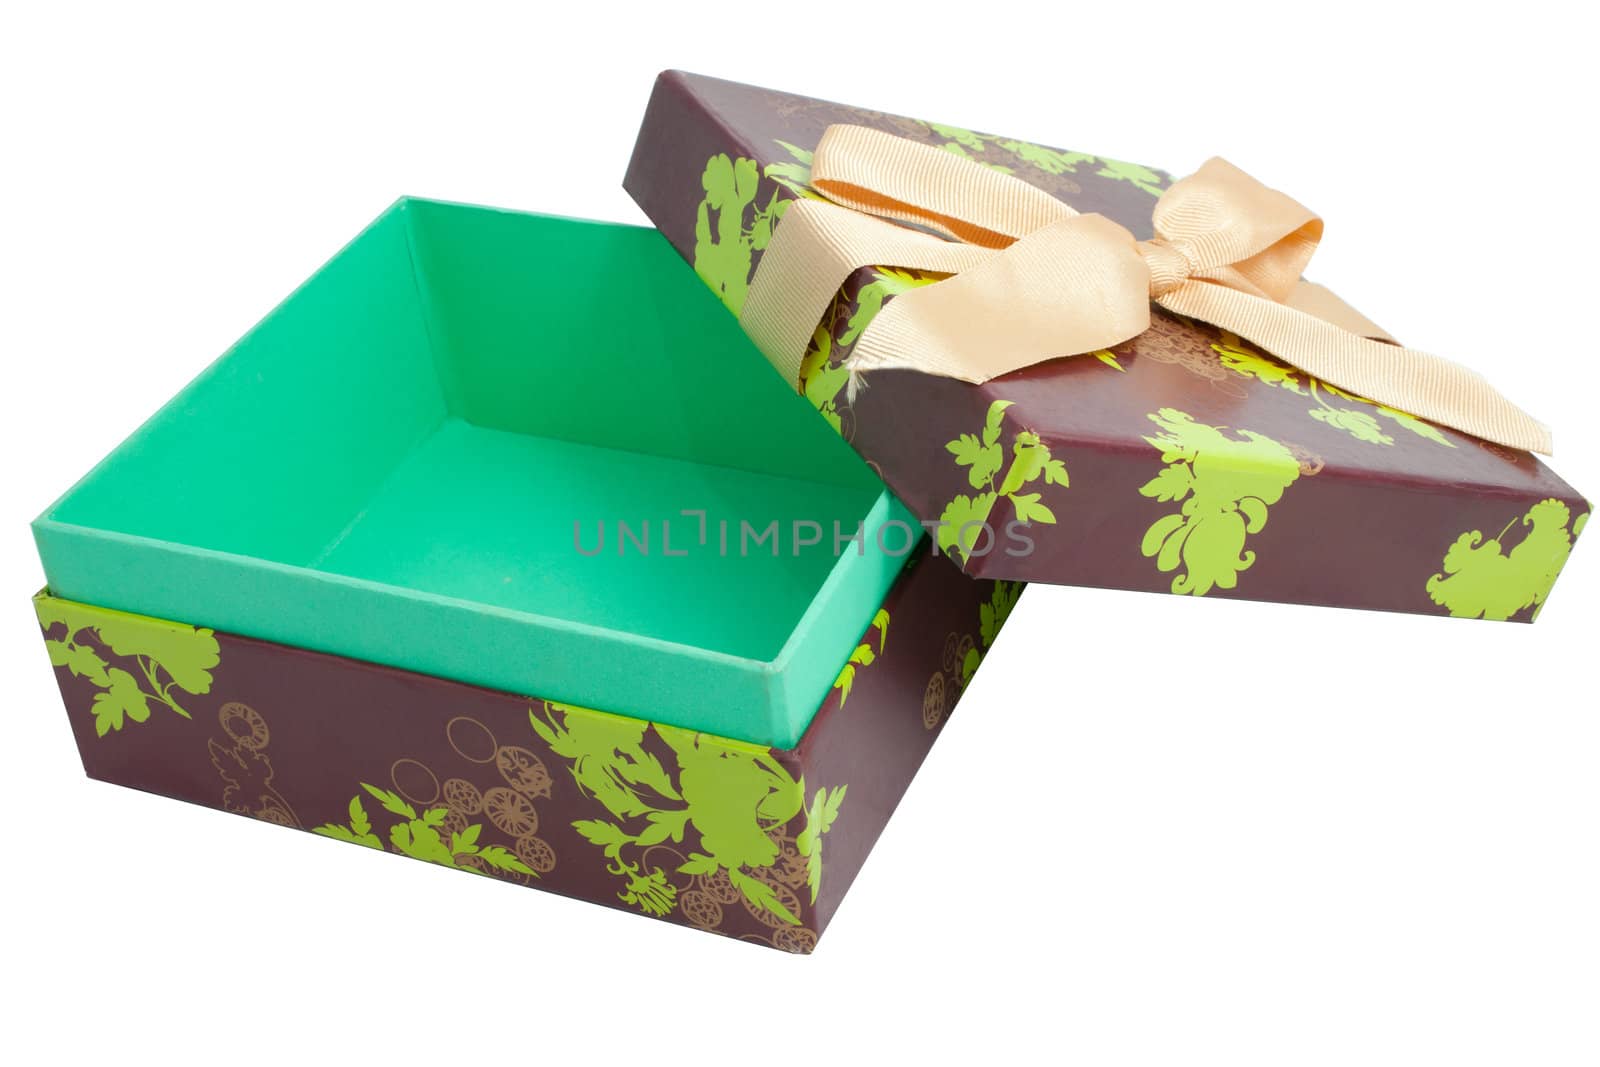 Gift Box by Suriyaphoto